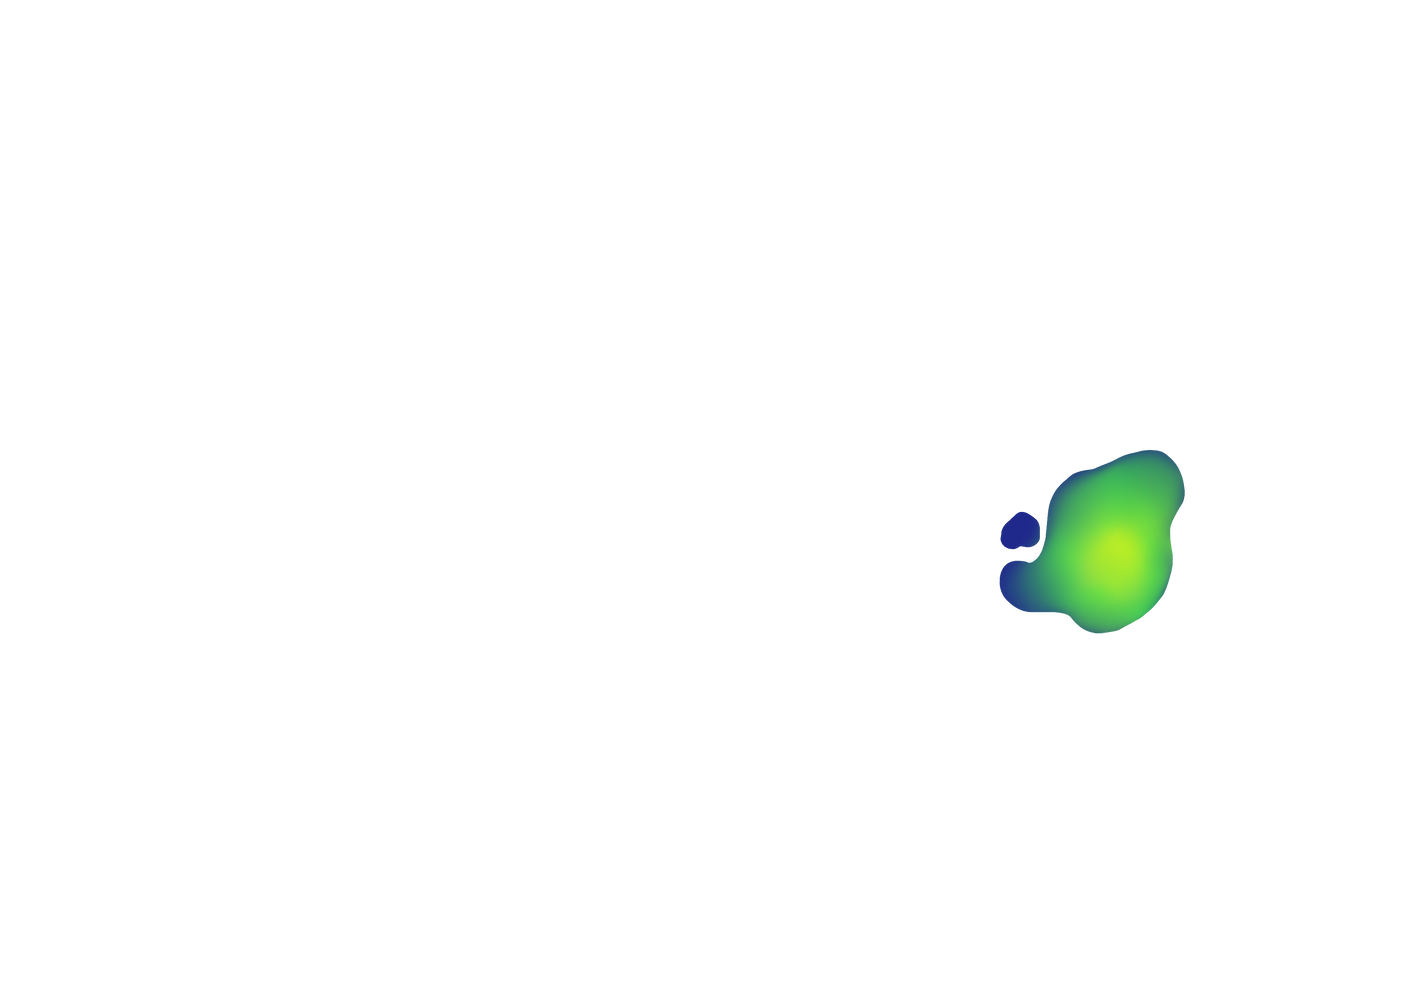 En esta imagen del cerebro se marca el lóbulo occipital imitando a una resonancia magnética funcional.